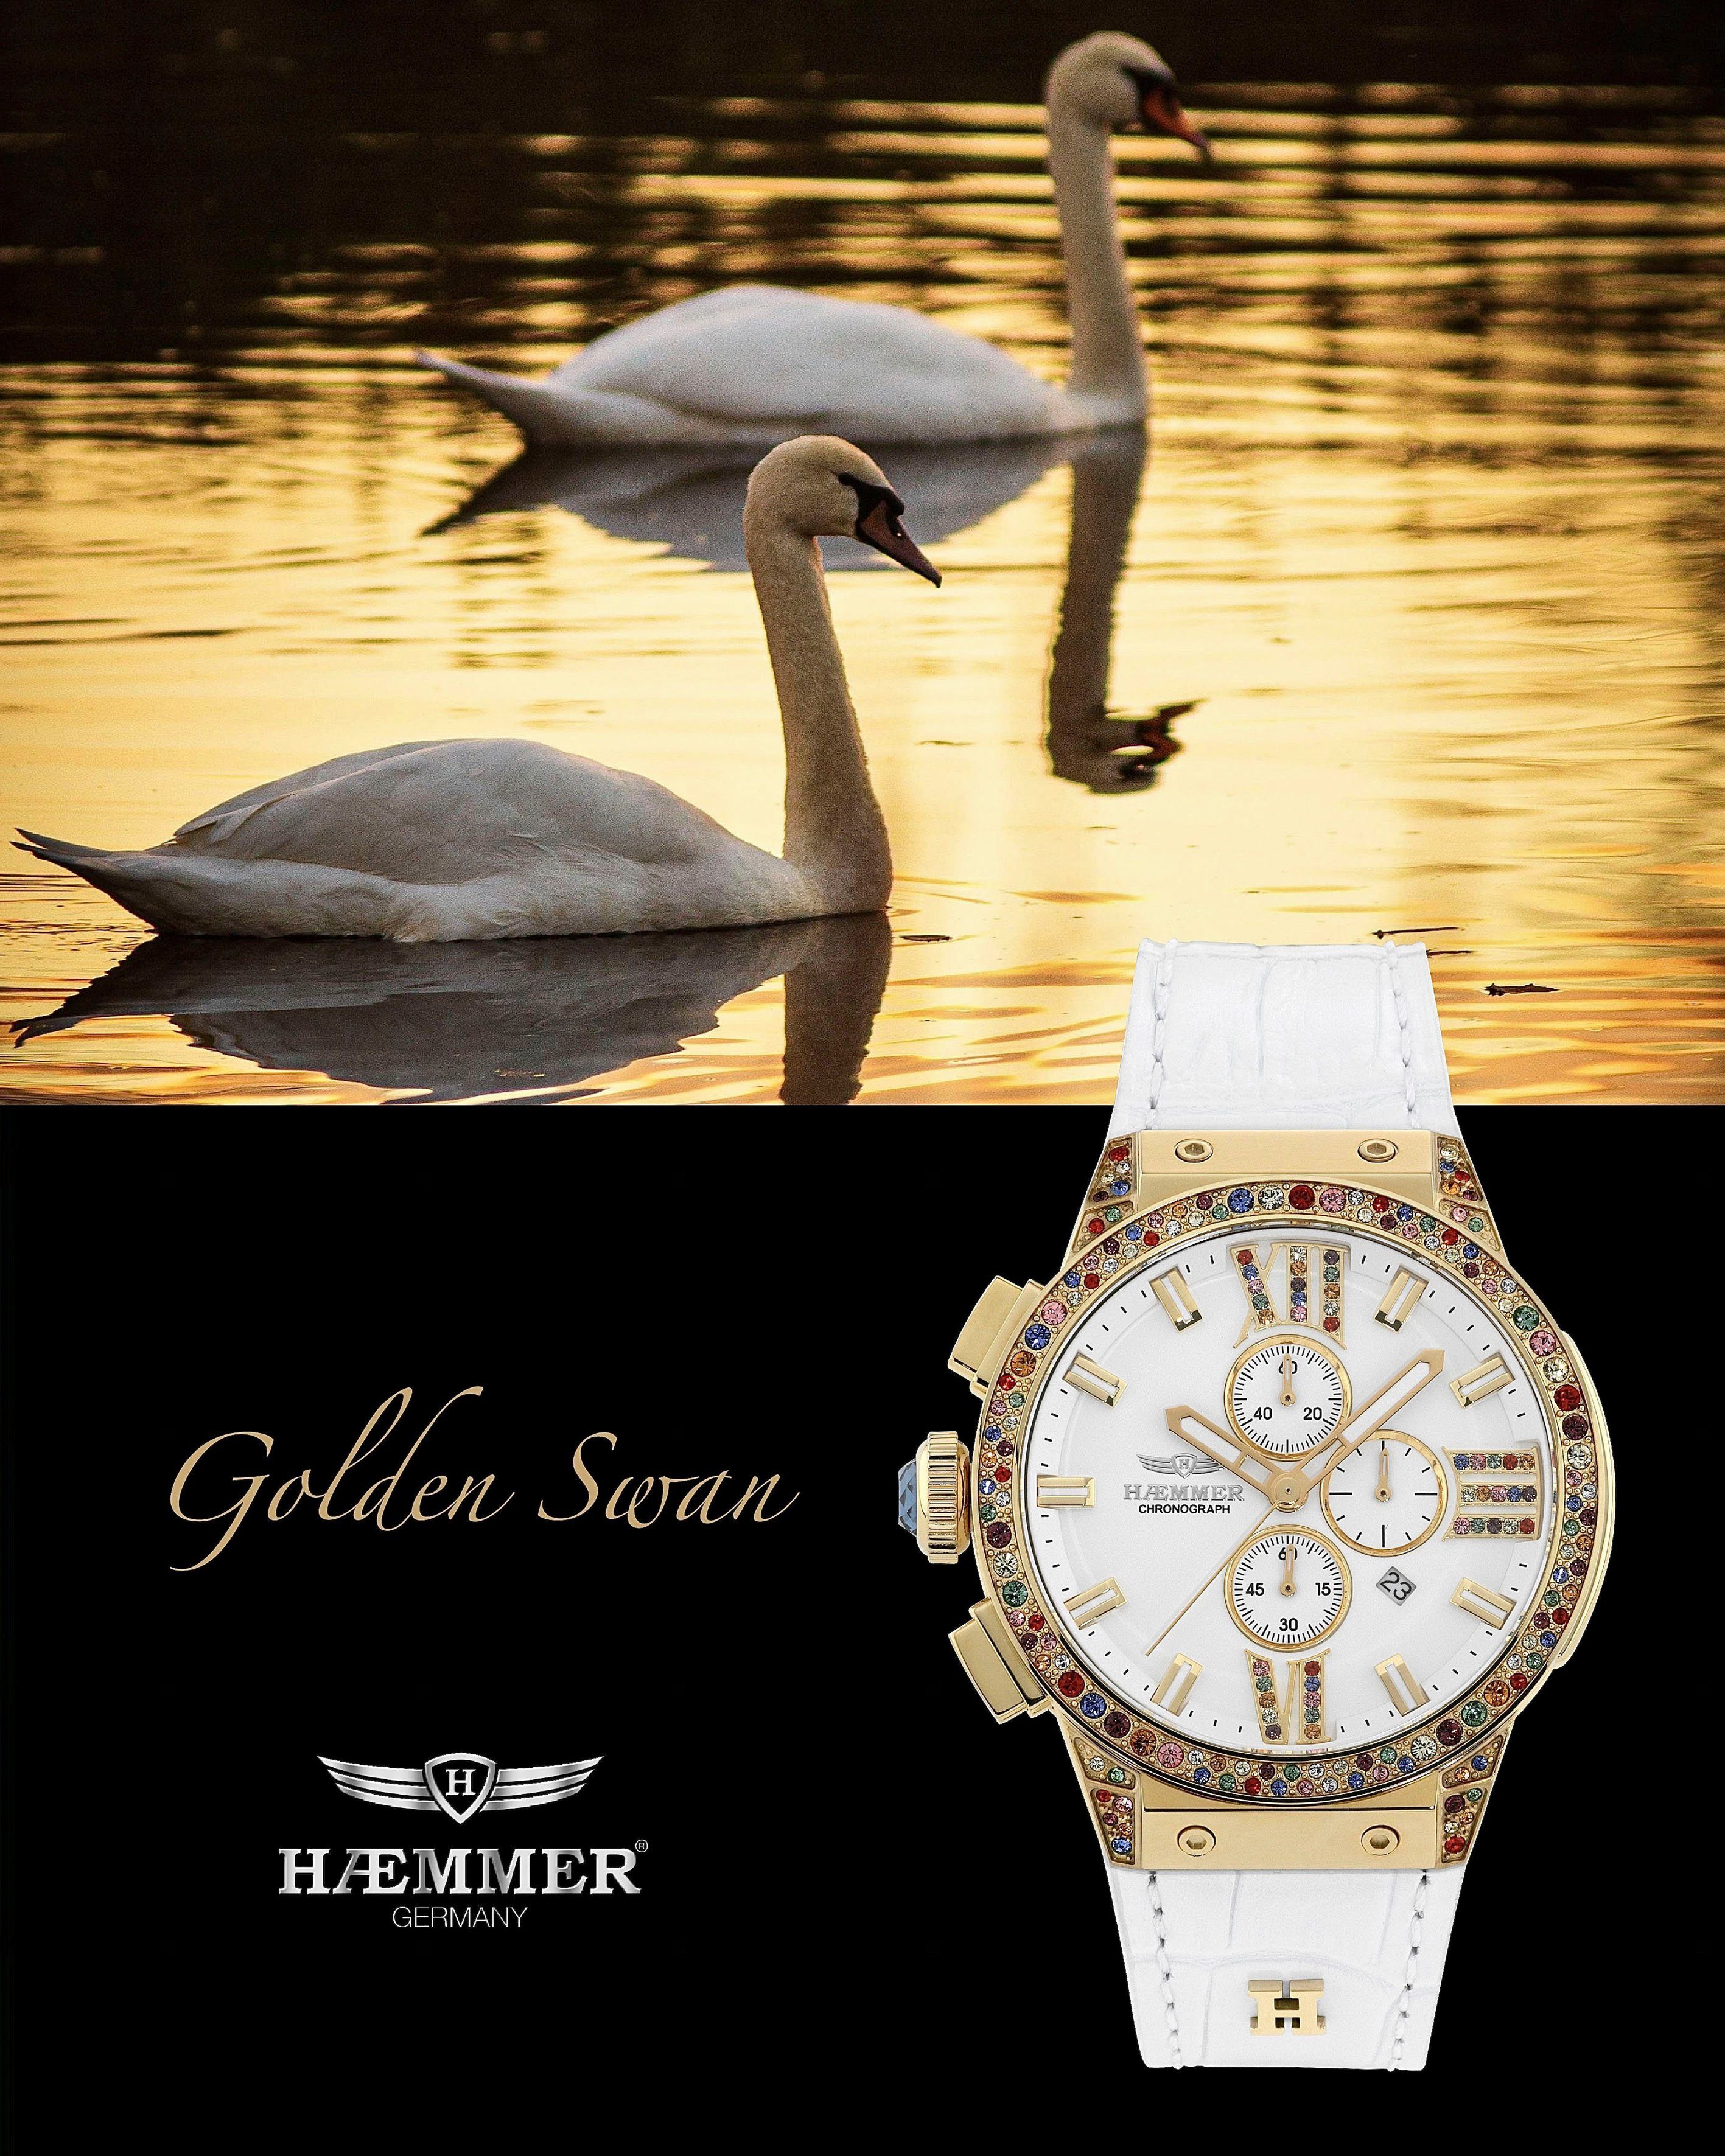 HAEMMER GERMANY Chronograph GOLDEN SWAN, E-037